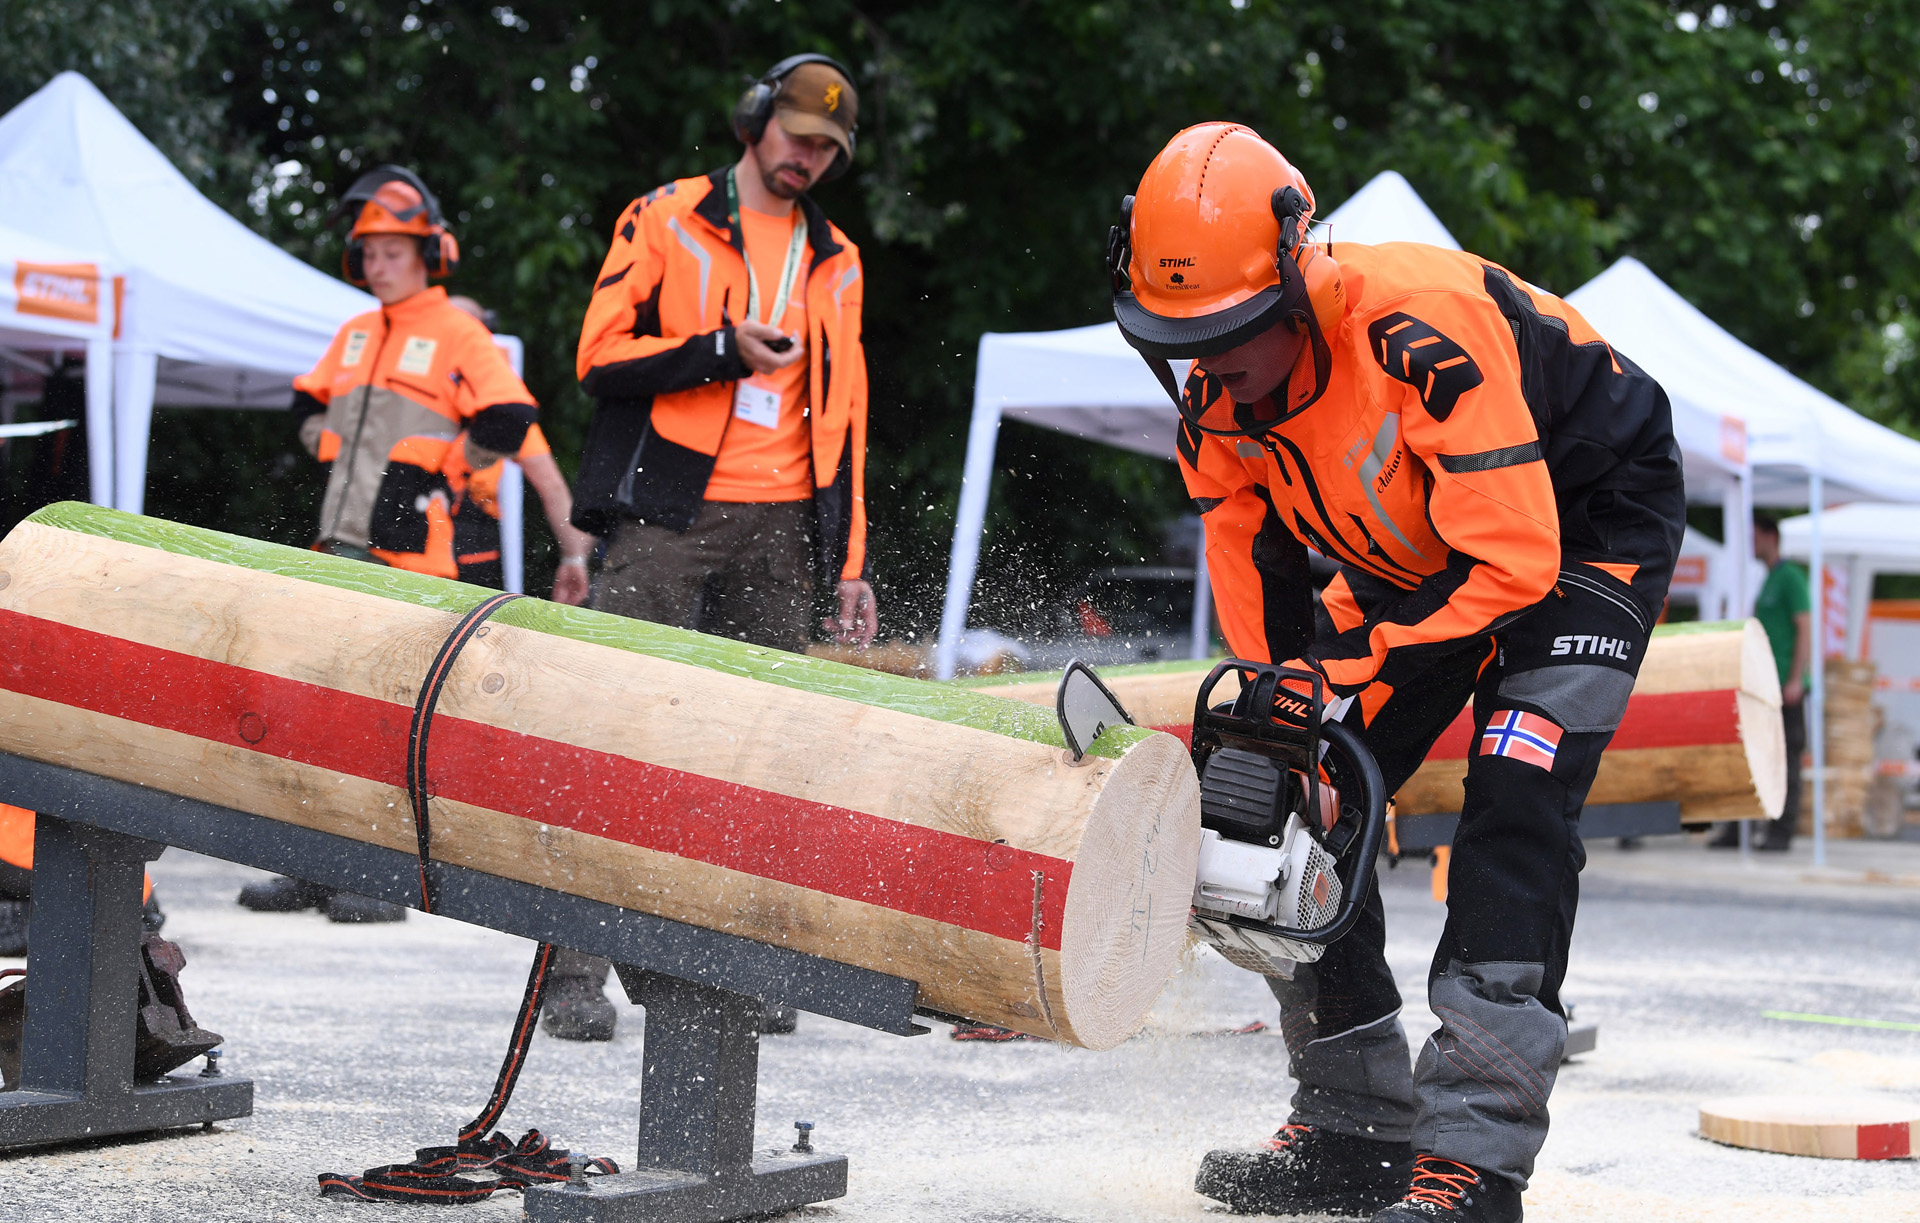 Schüler aus Norwegen in persönlicher Schutzausrüstung von STIHL und einer STIHL Kettensäge sägt einen Baumstamm